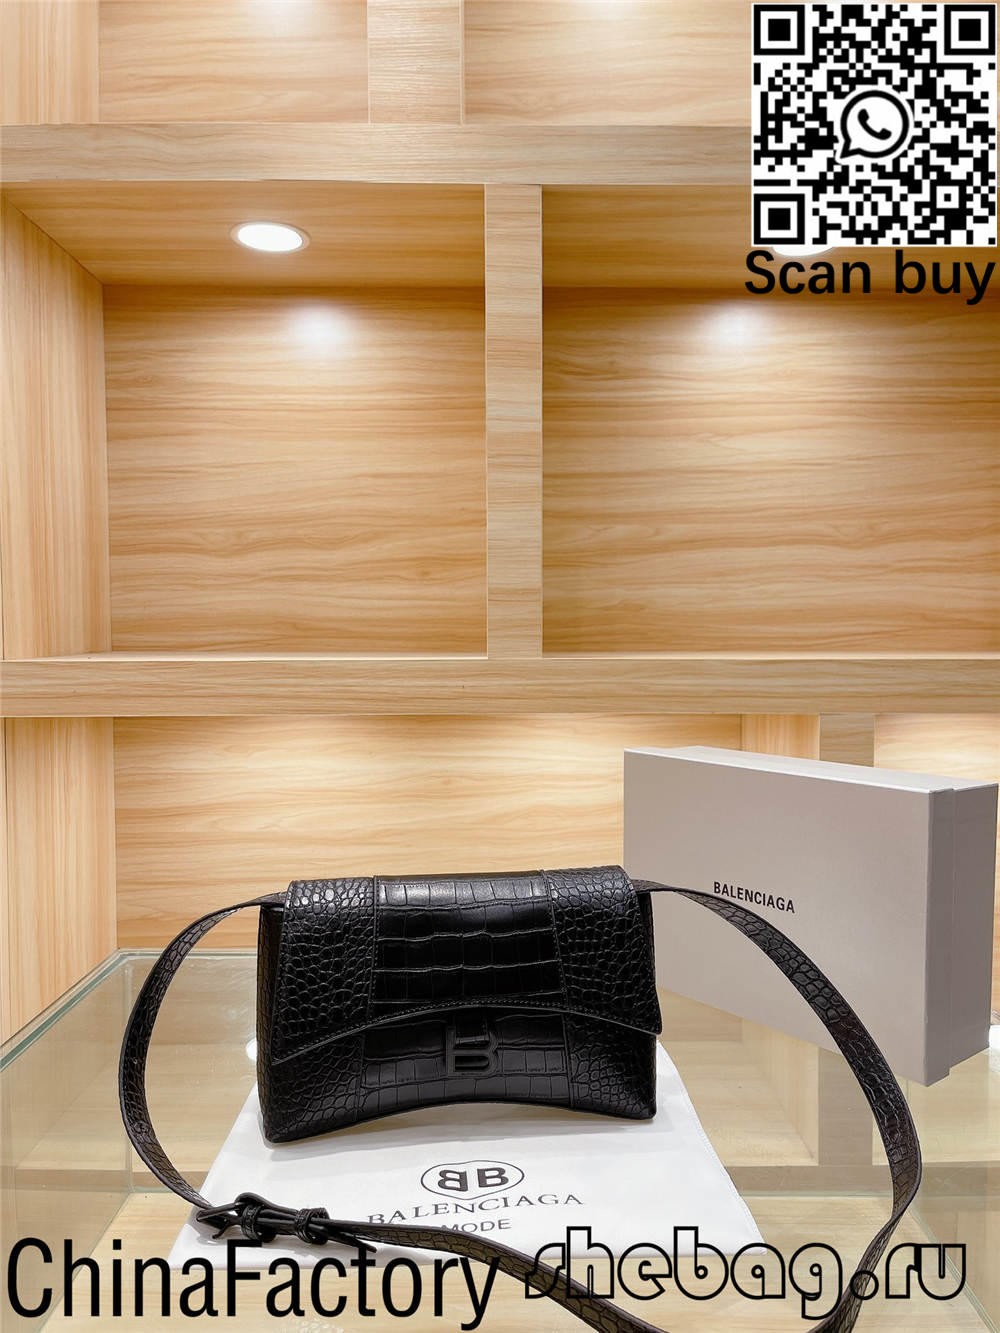 Como comprar réplicas baratas de bolsas balenciaga de Hong Kong? (2022 atualizado) - Loja online de bolsa Louis Vuitton falsa de melhor qualidade, bolsa de designer de réplica ru